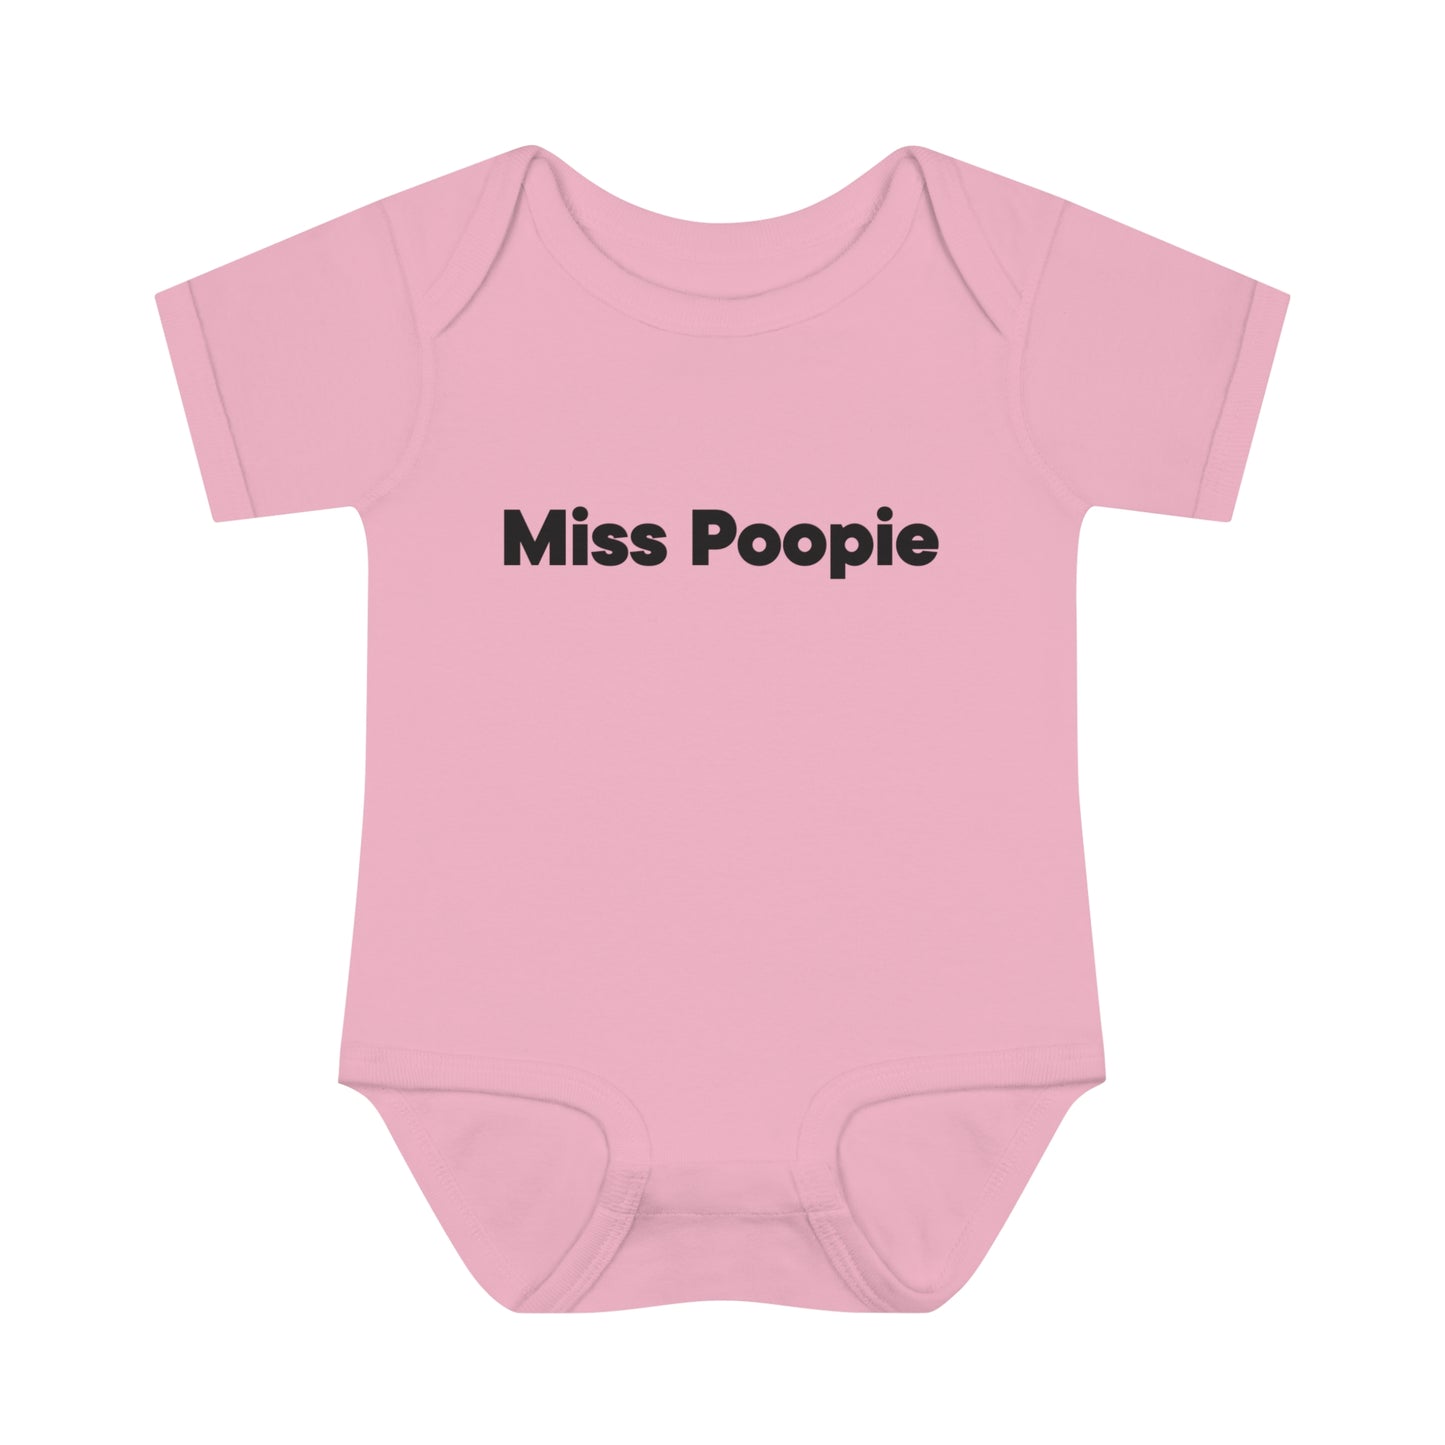 Miss Poopie Onesie